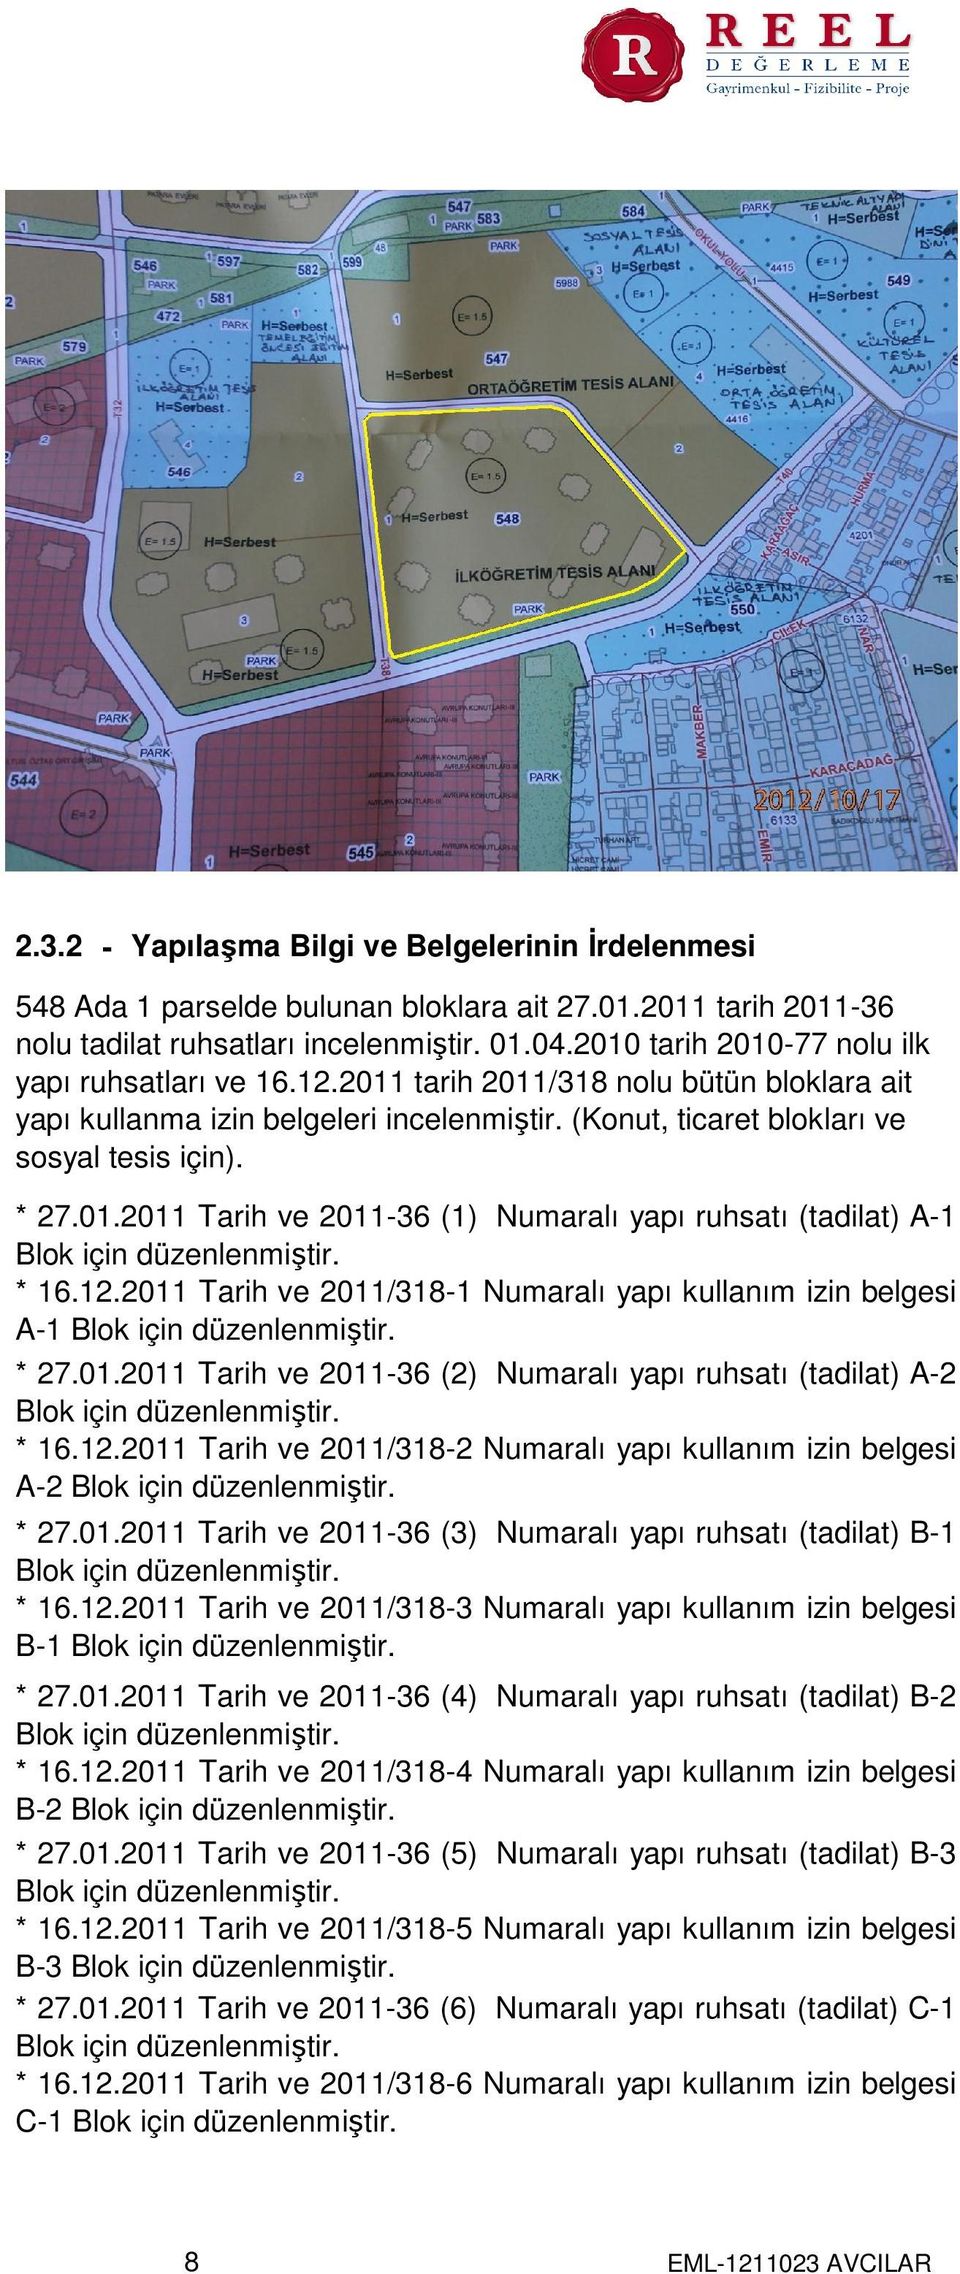 * 16.12.2011 Tarih ve 2011/318-1 Numaralı yapı kullanım izin belgesi A-1 Blok için düzenlenmiştir. * 27.01.2011 Tarih ve 2011-36 (2) Numaralı yapı ruhsatı (tadilat) A-2 Blok için düzenlenmiştir. * 16.